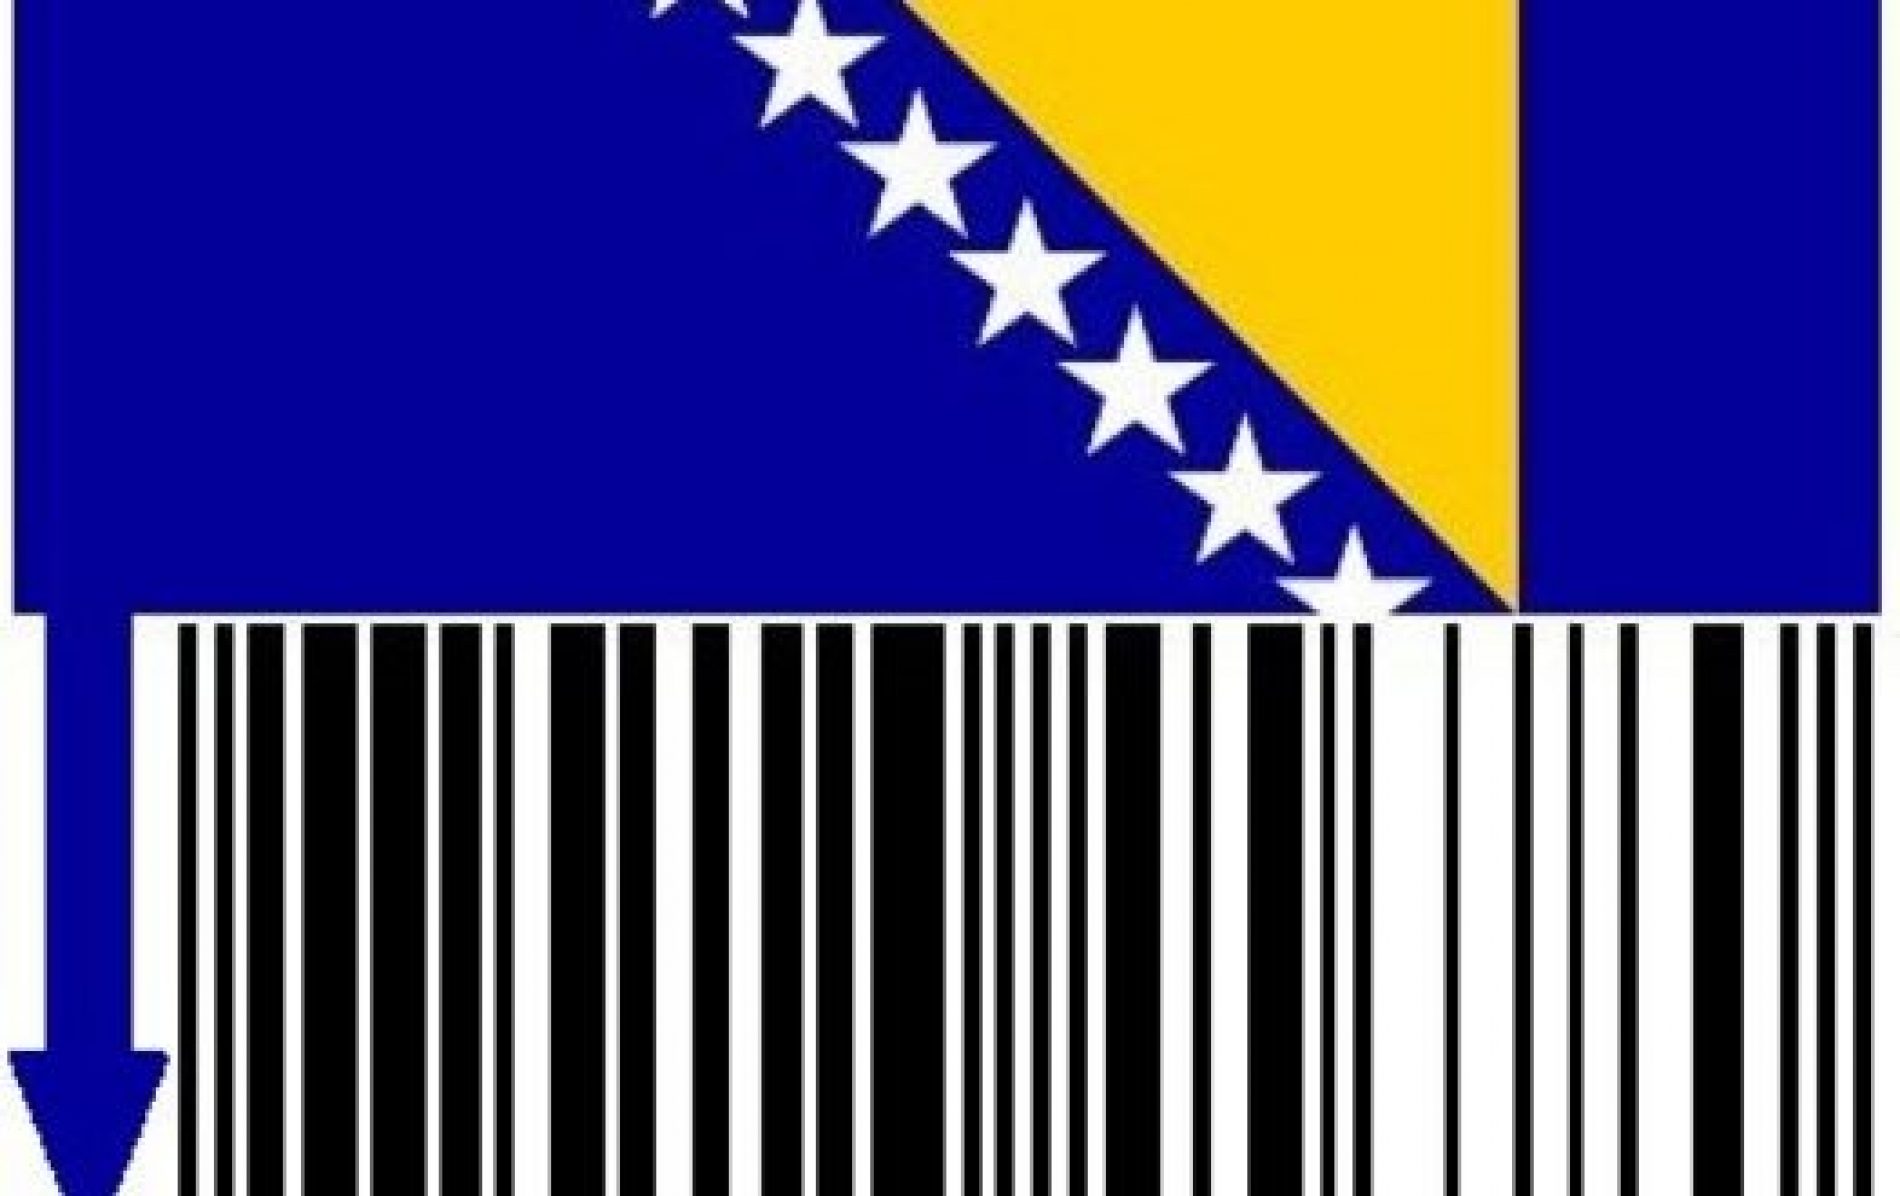 Šta je korona virus donio pozitivnog u bosanskoj ekonomiji